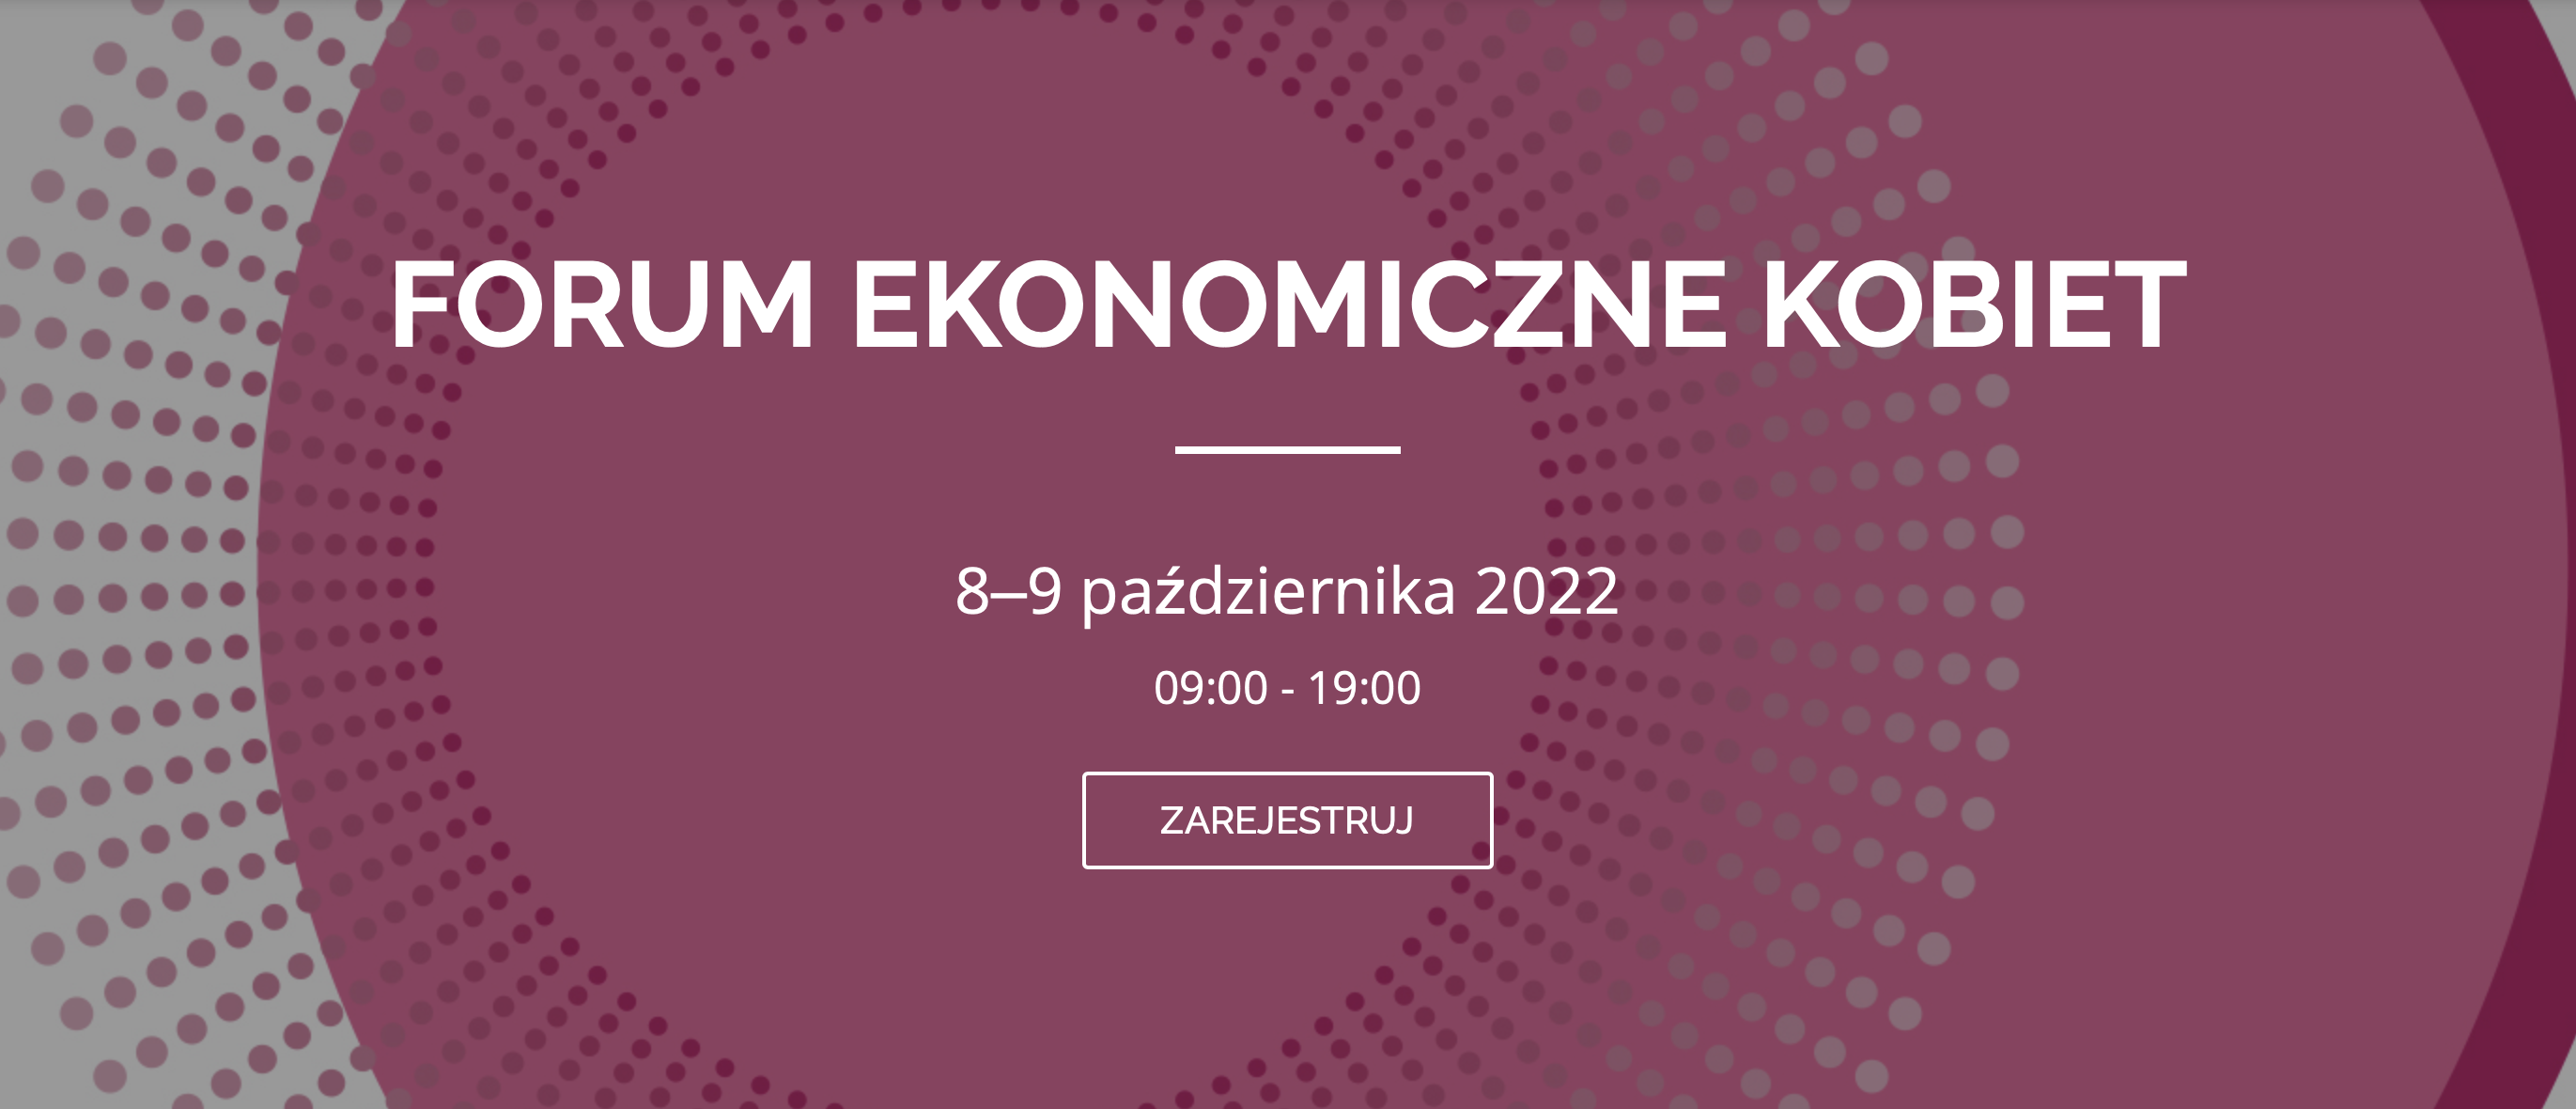 Forum Ekonomiczne Kobiet 8 i 9 października 2022 r.